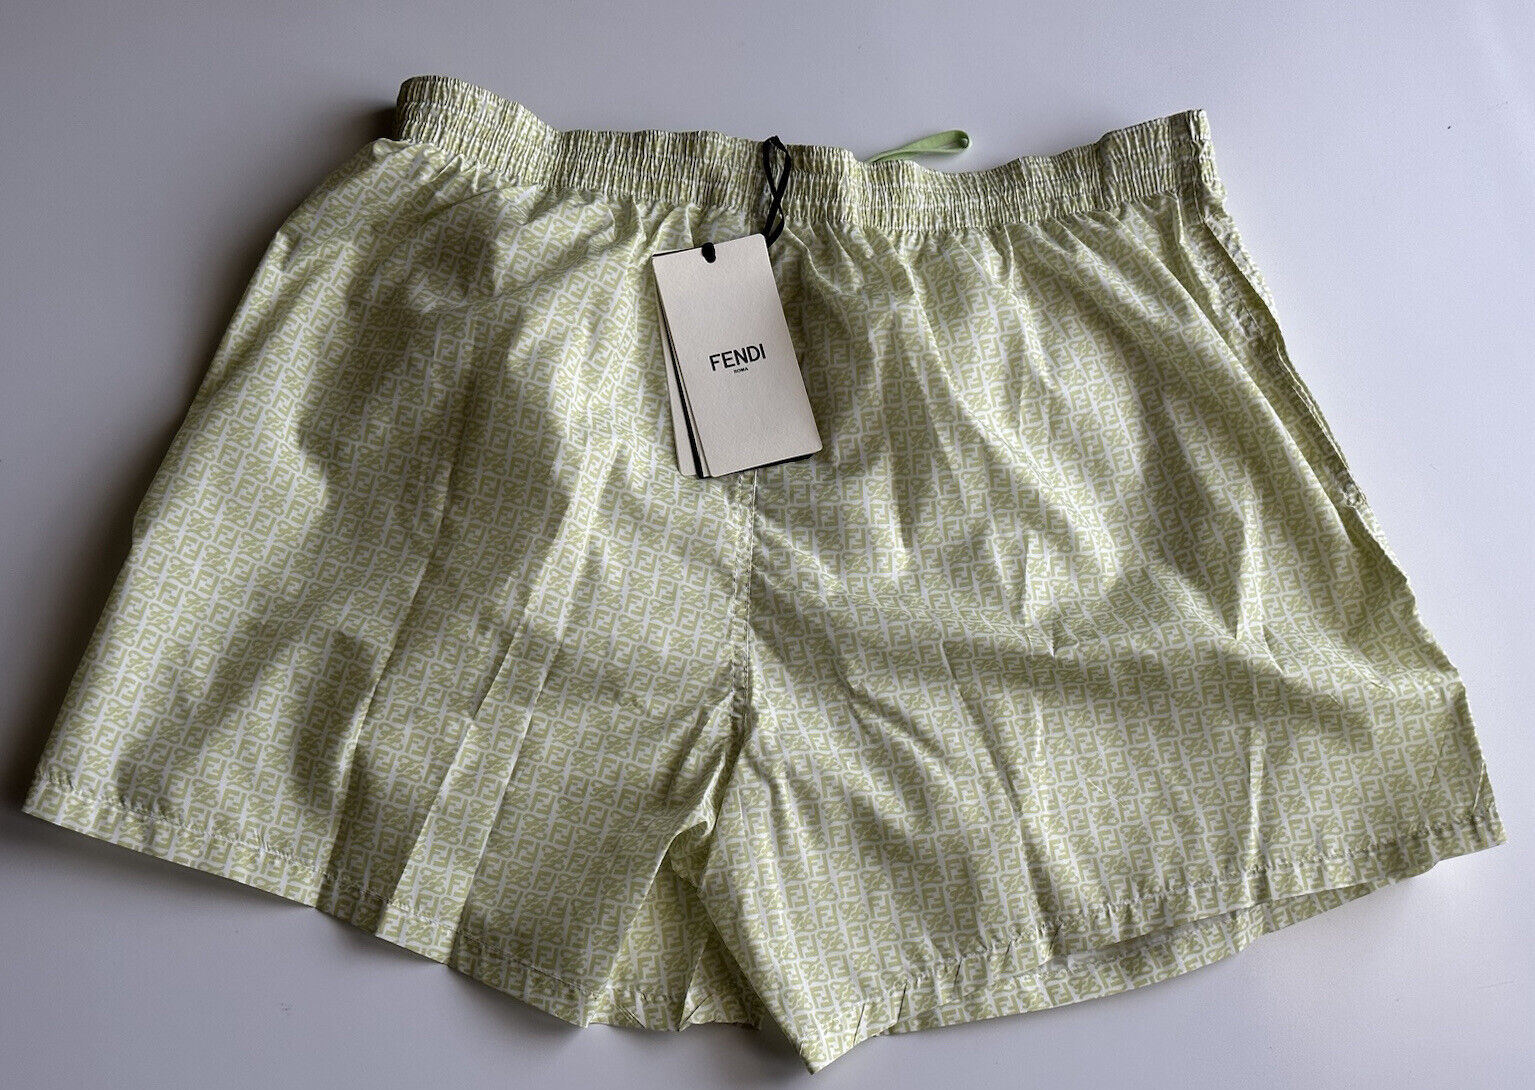 Мужские светло-зеленые шорты-боксеры для плавания Fendi FF стоимостью 580 долларов США 38 США (54 евро) IT FXB077 